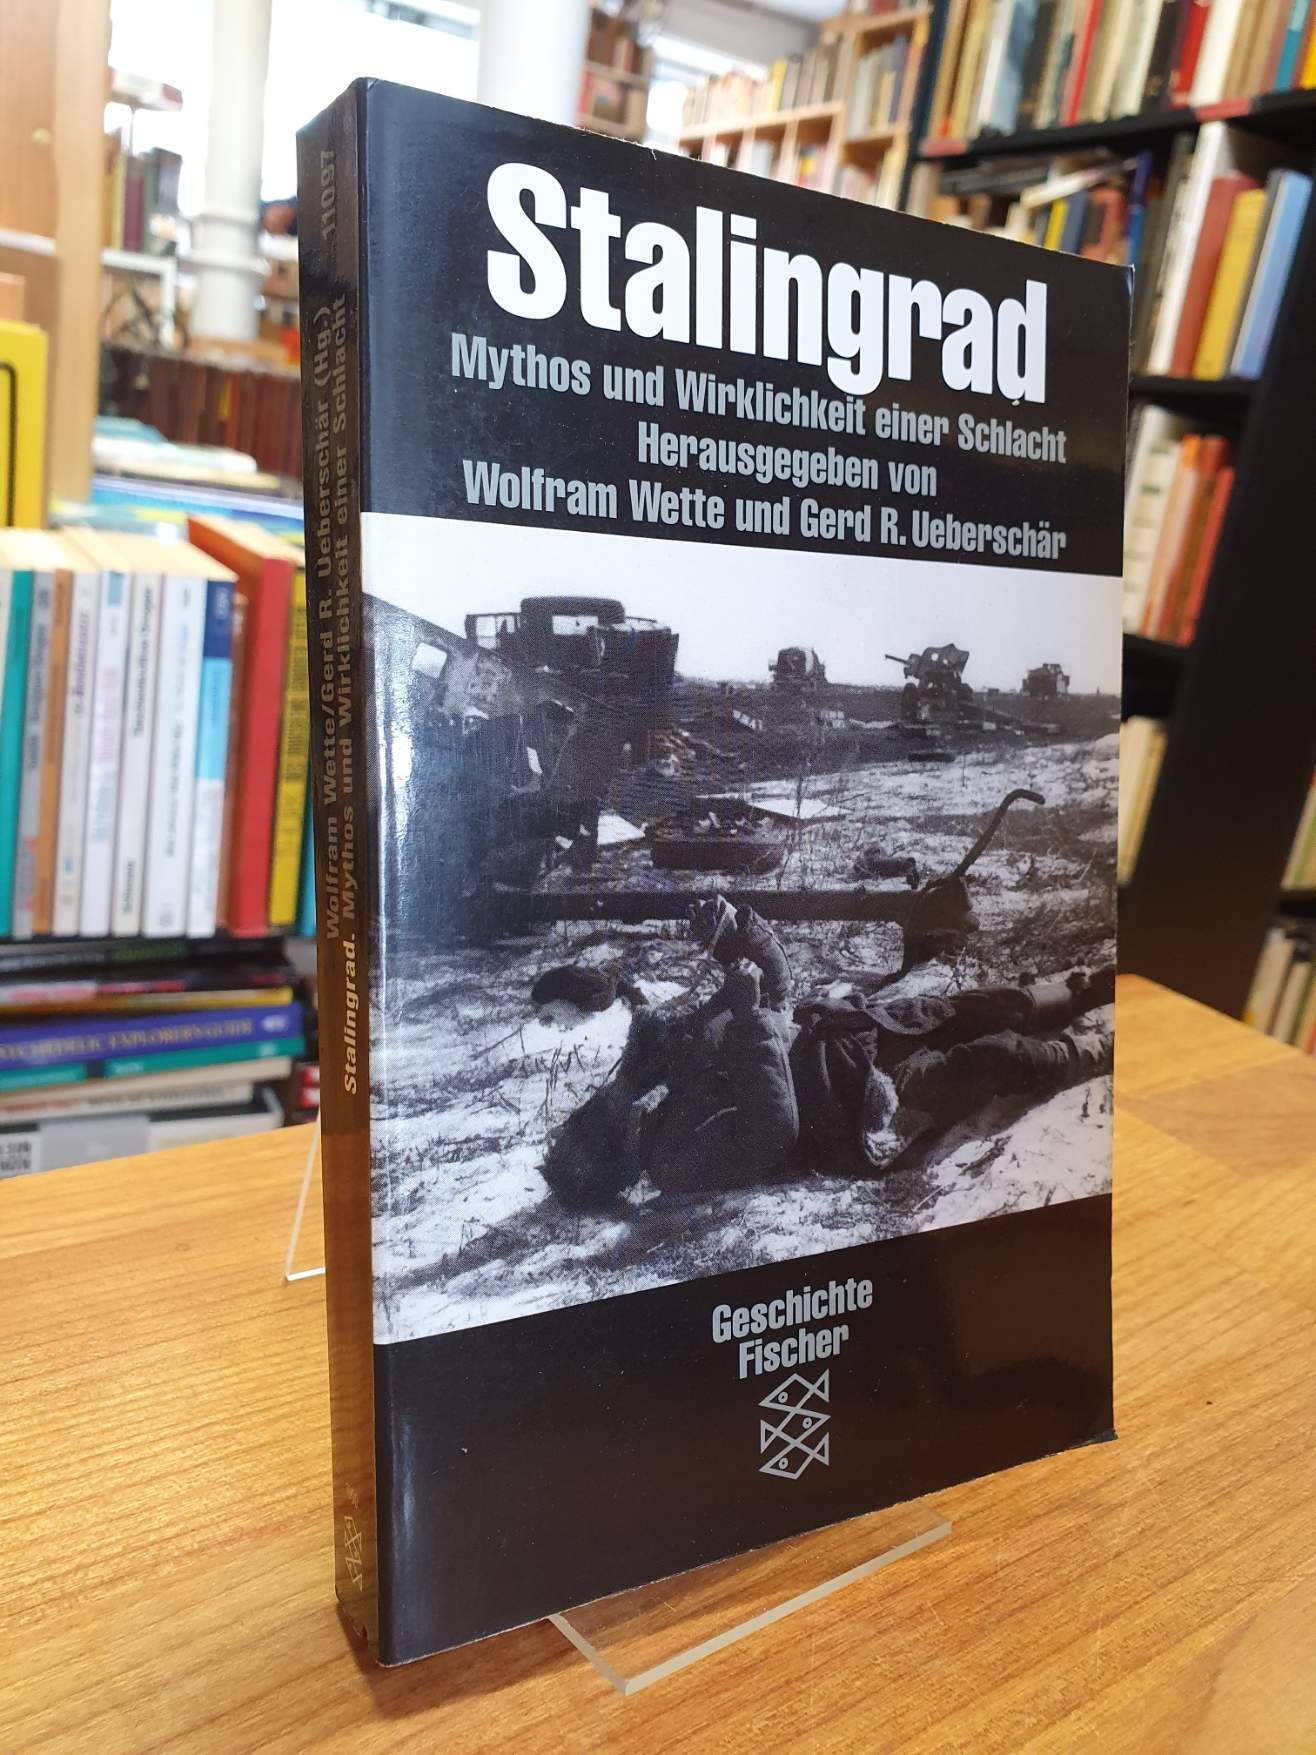 Stalingrad – Mythos und Wirklichkeit einer Schlacht,